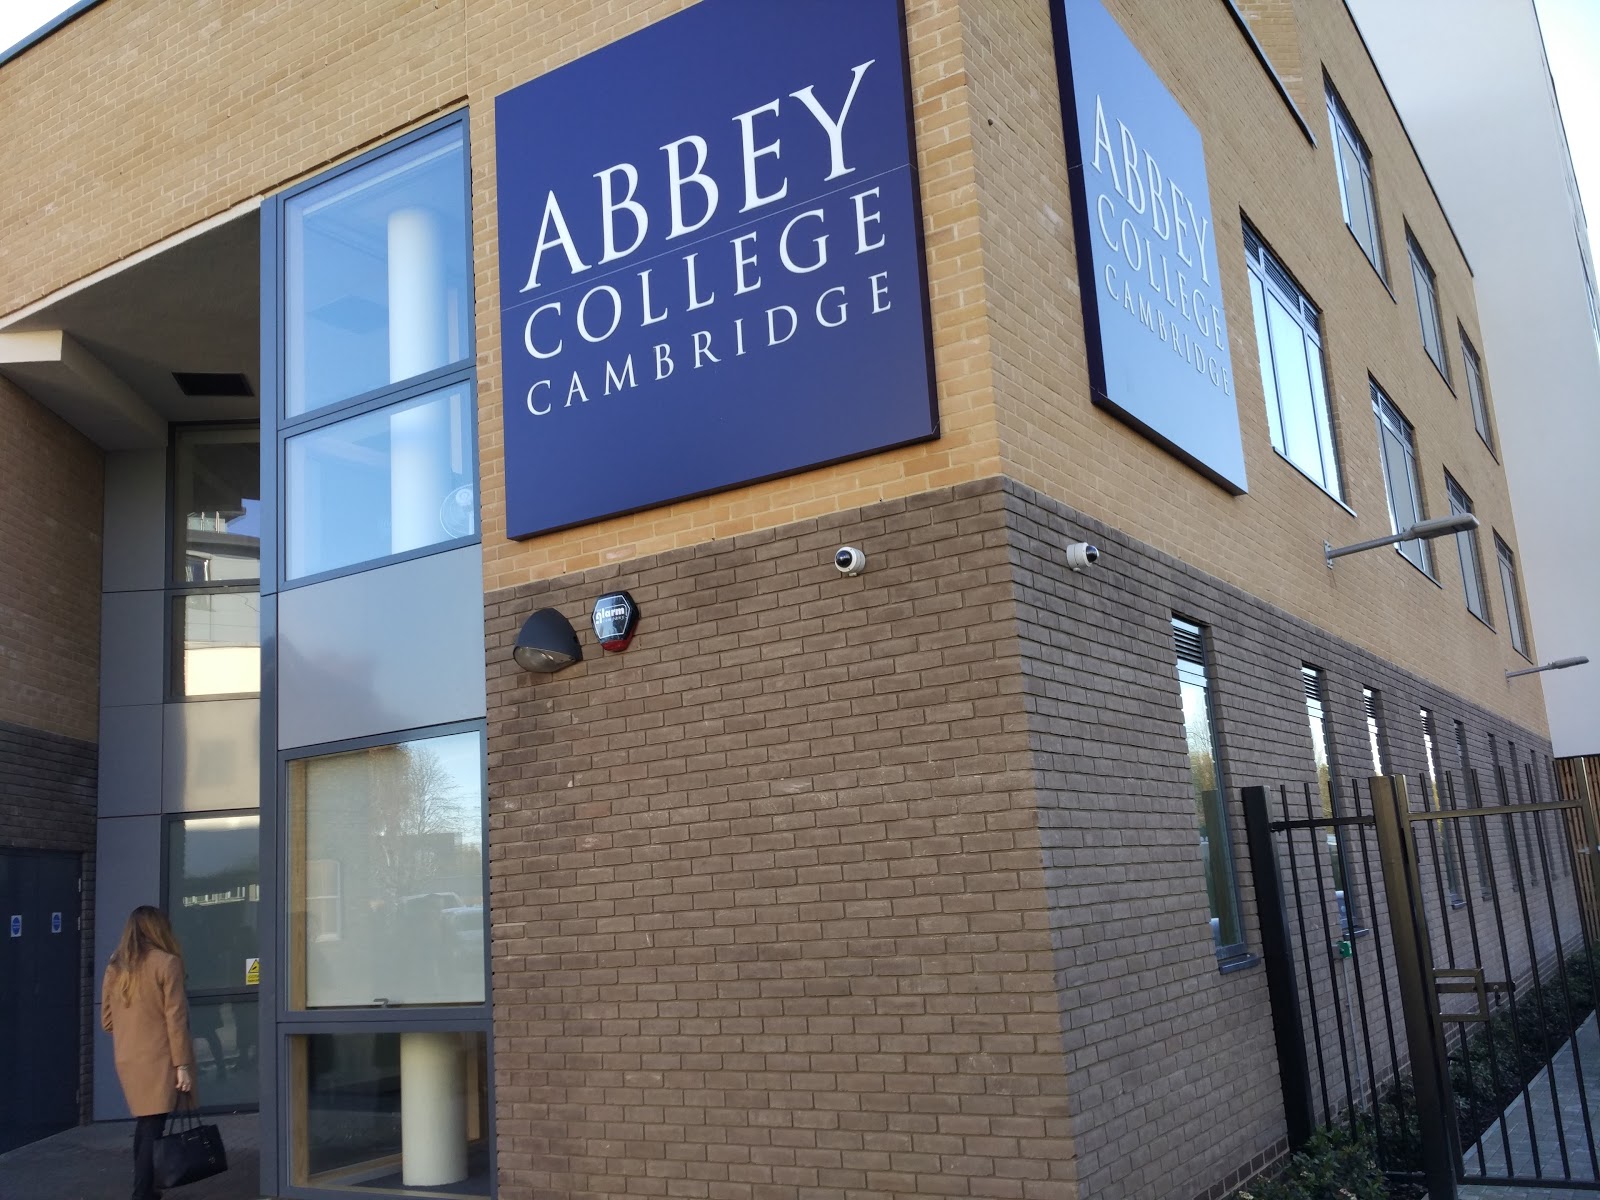 Abbey College Cambridge 